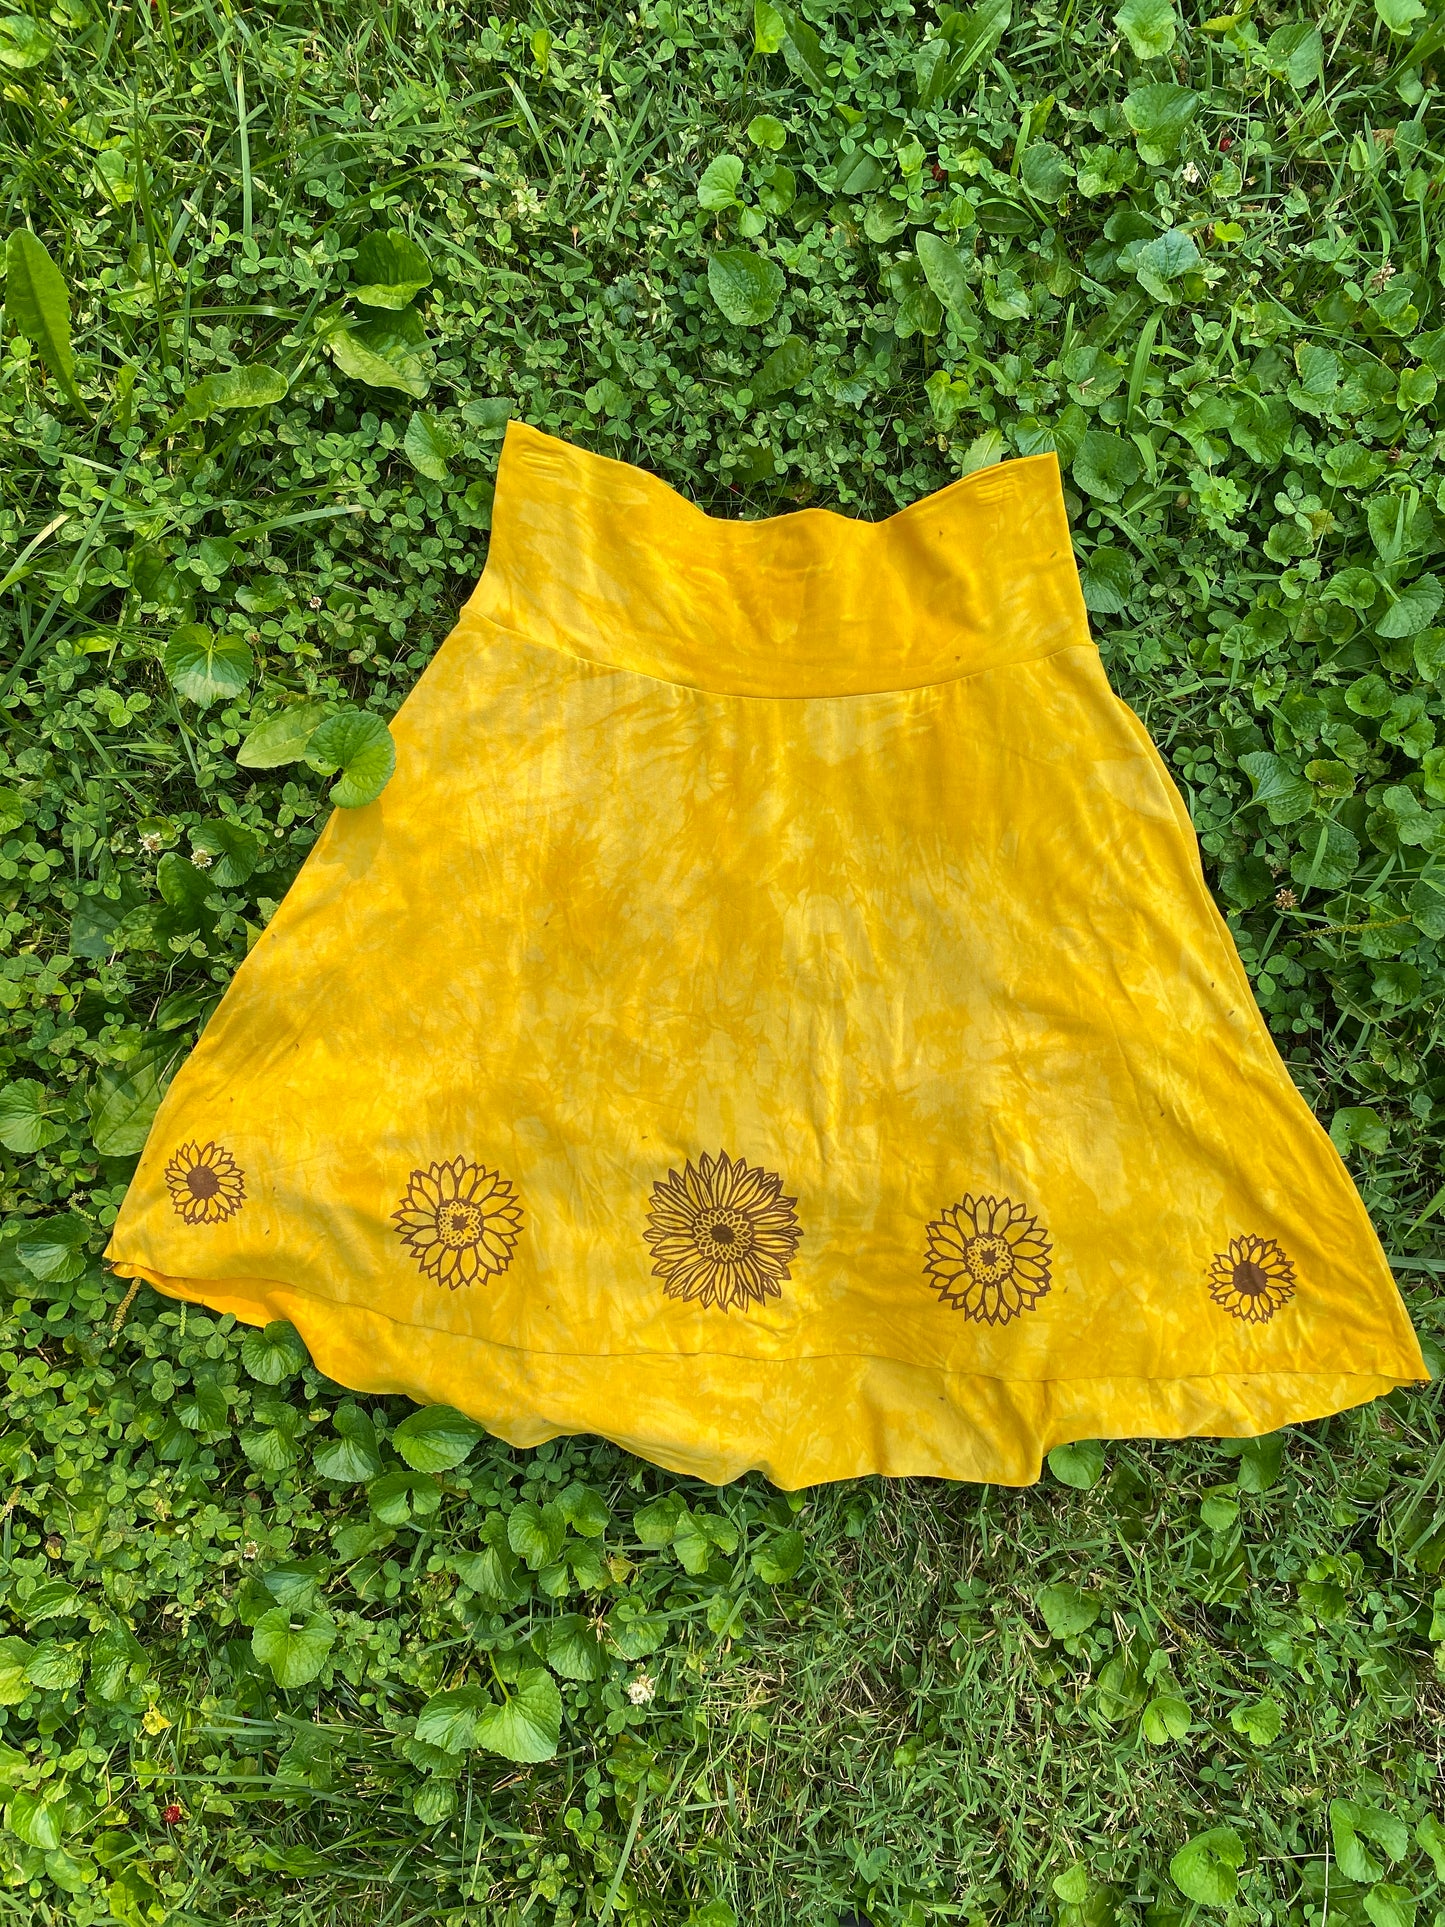 Tree’s Skirt, Sunflowers!